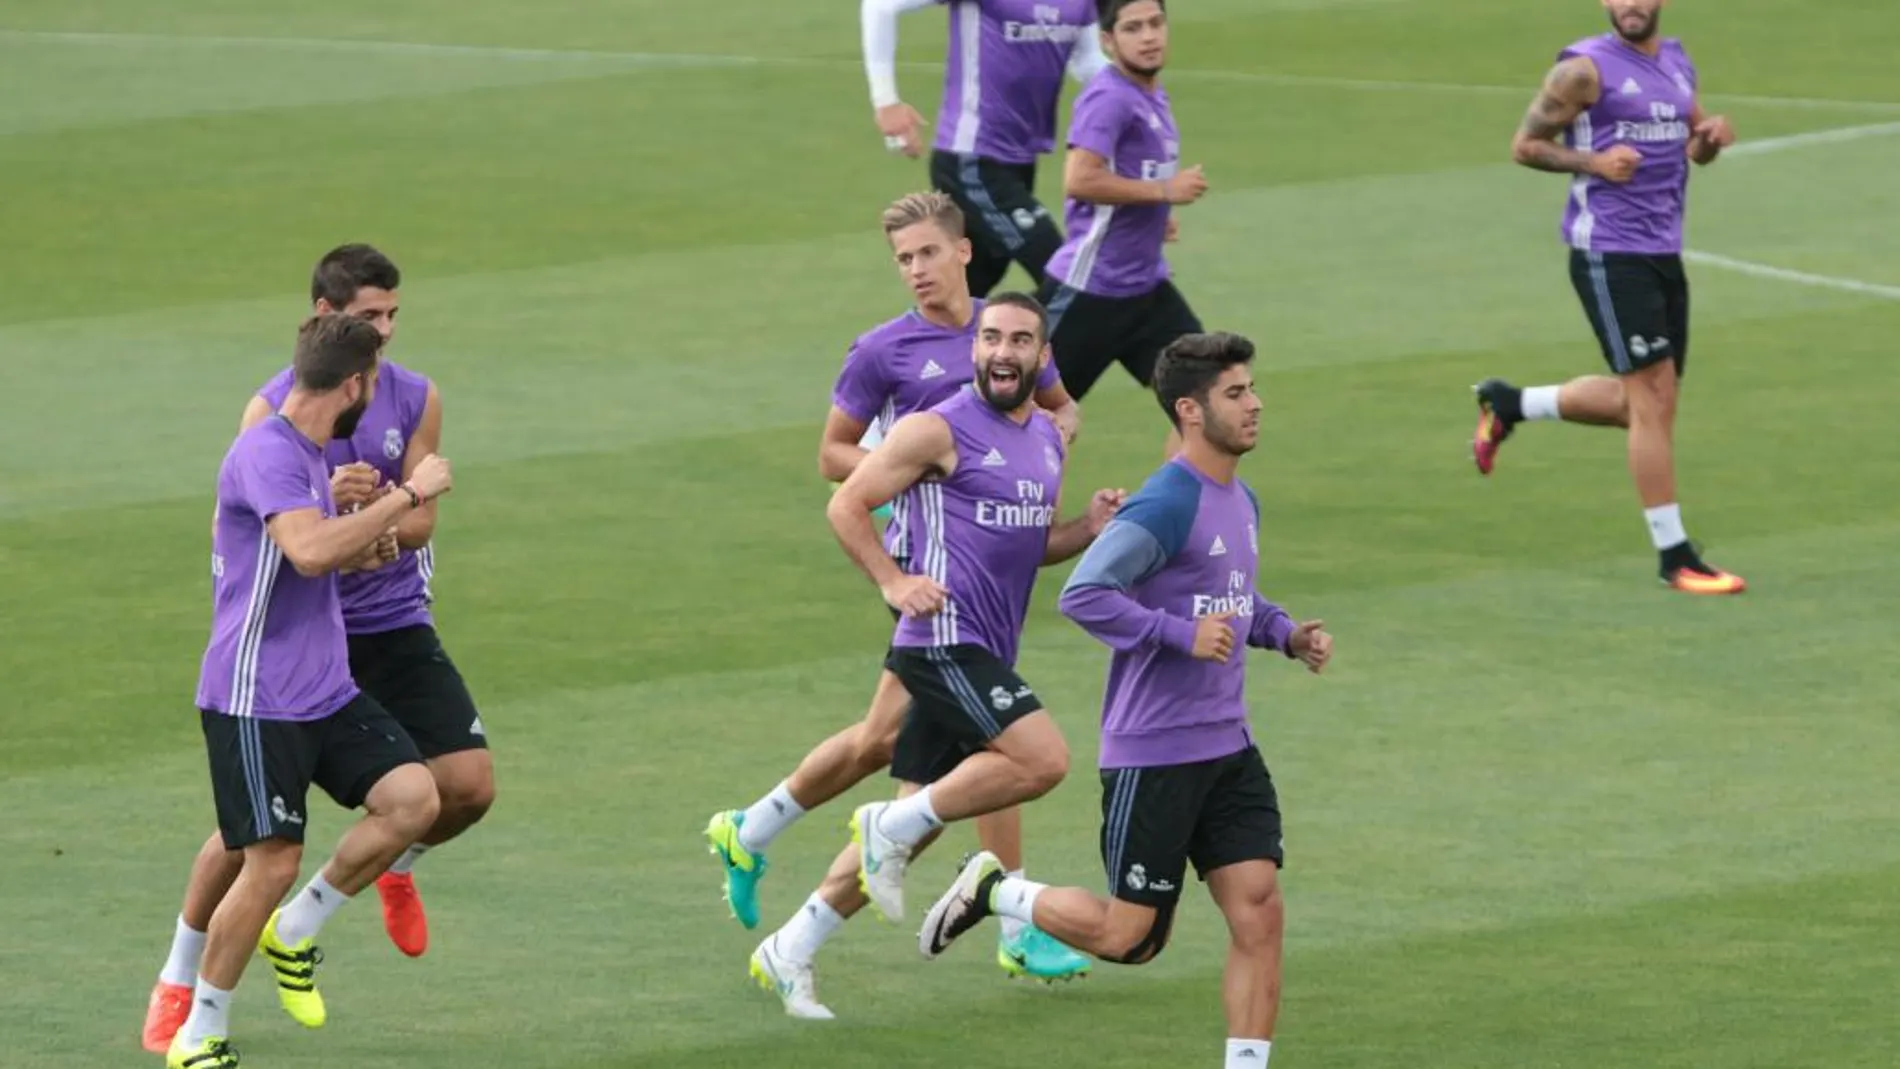 El Real Madrid durantre una sesión de entrenamiento